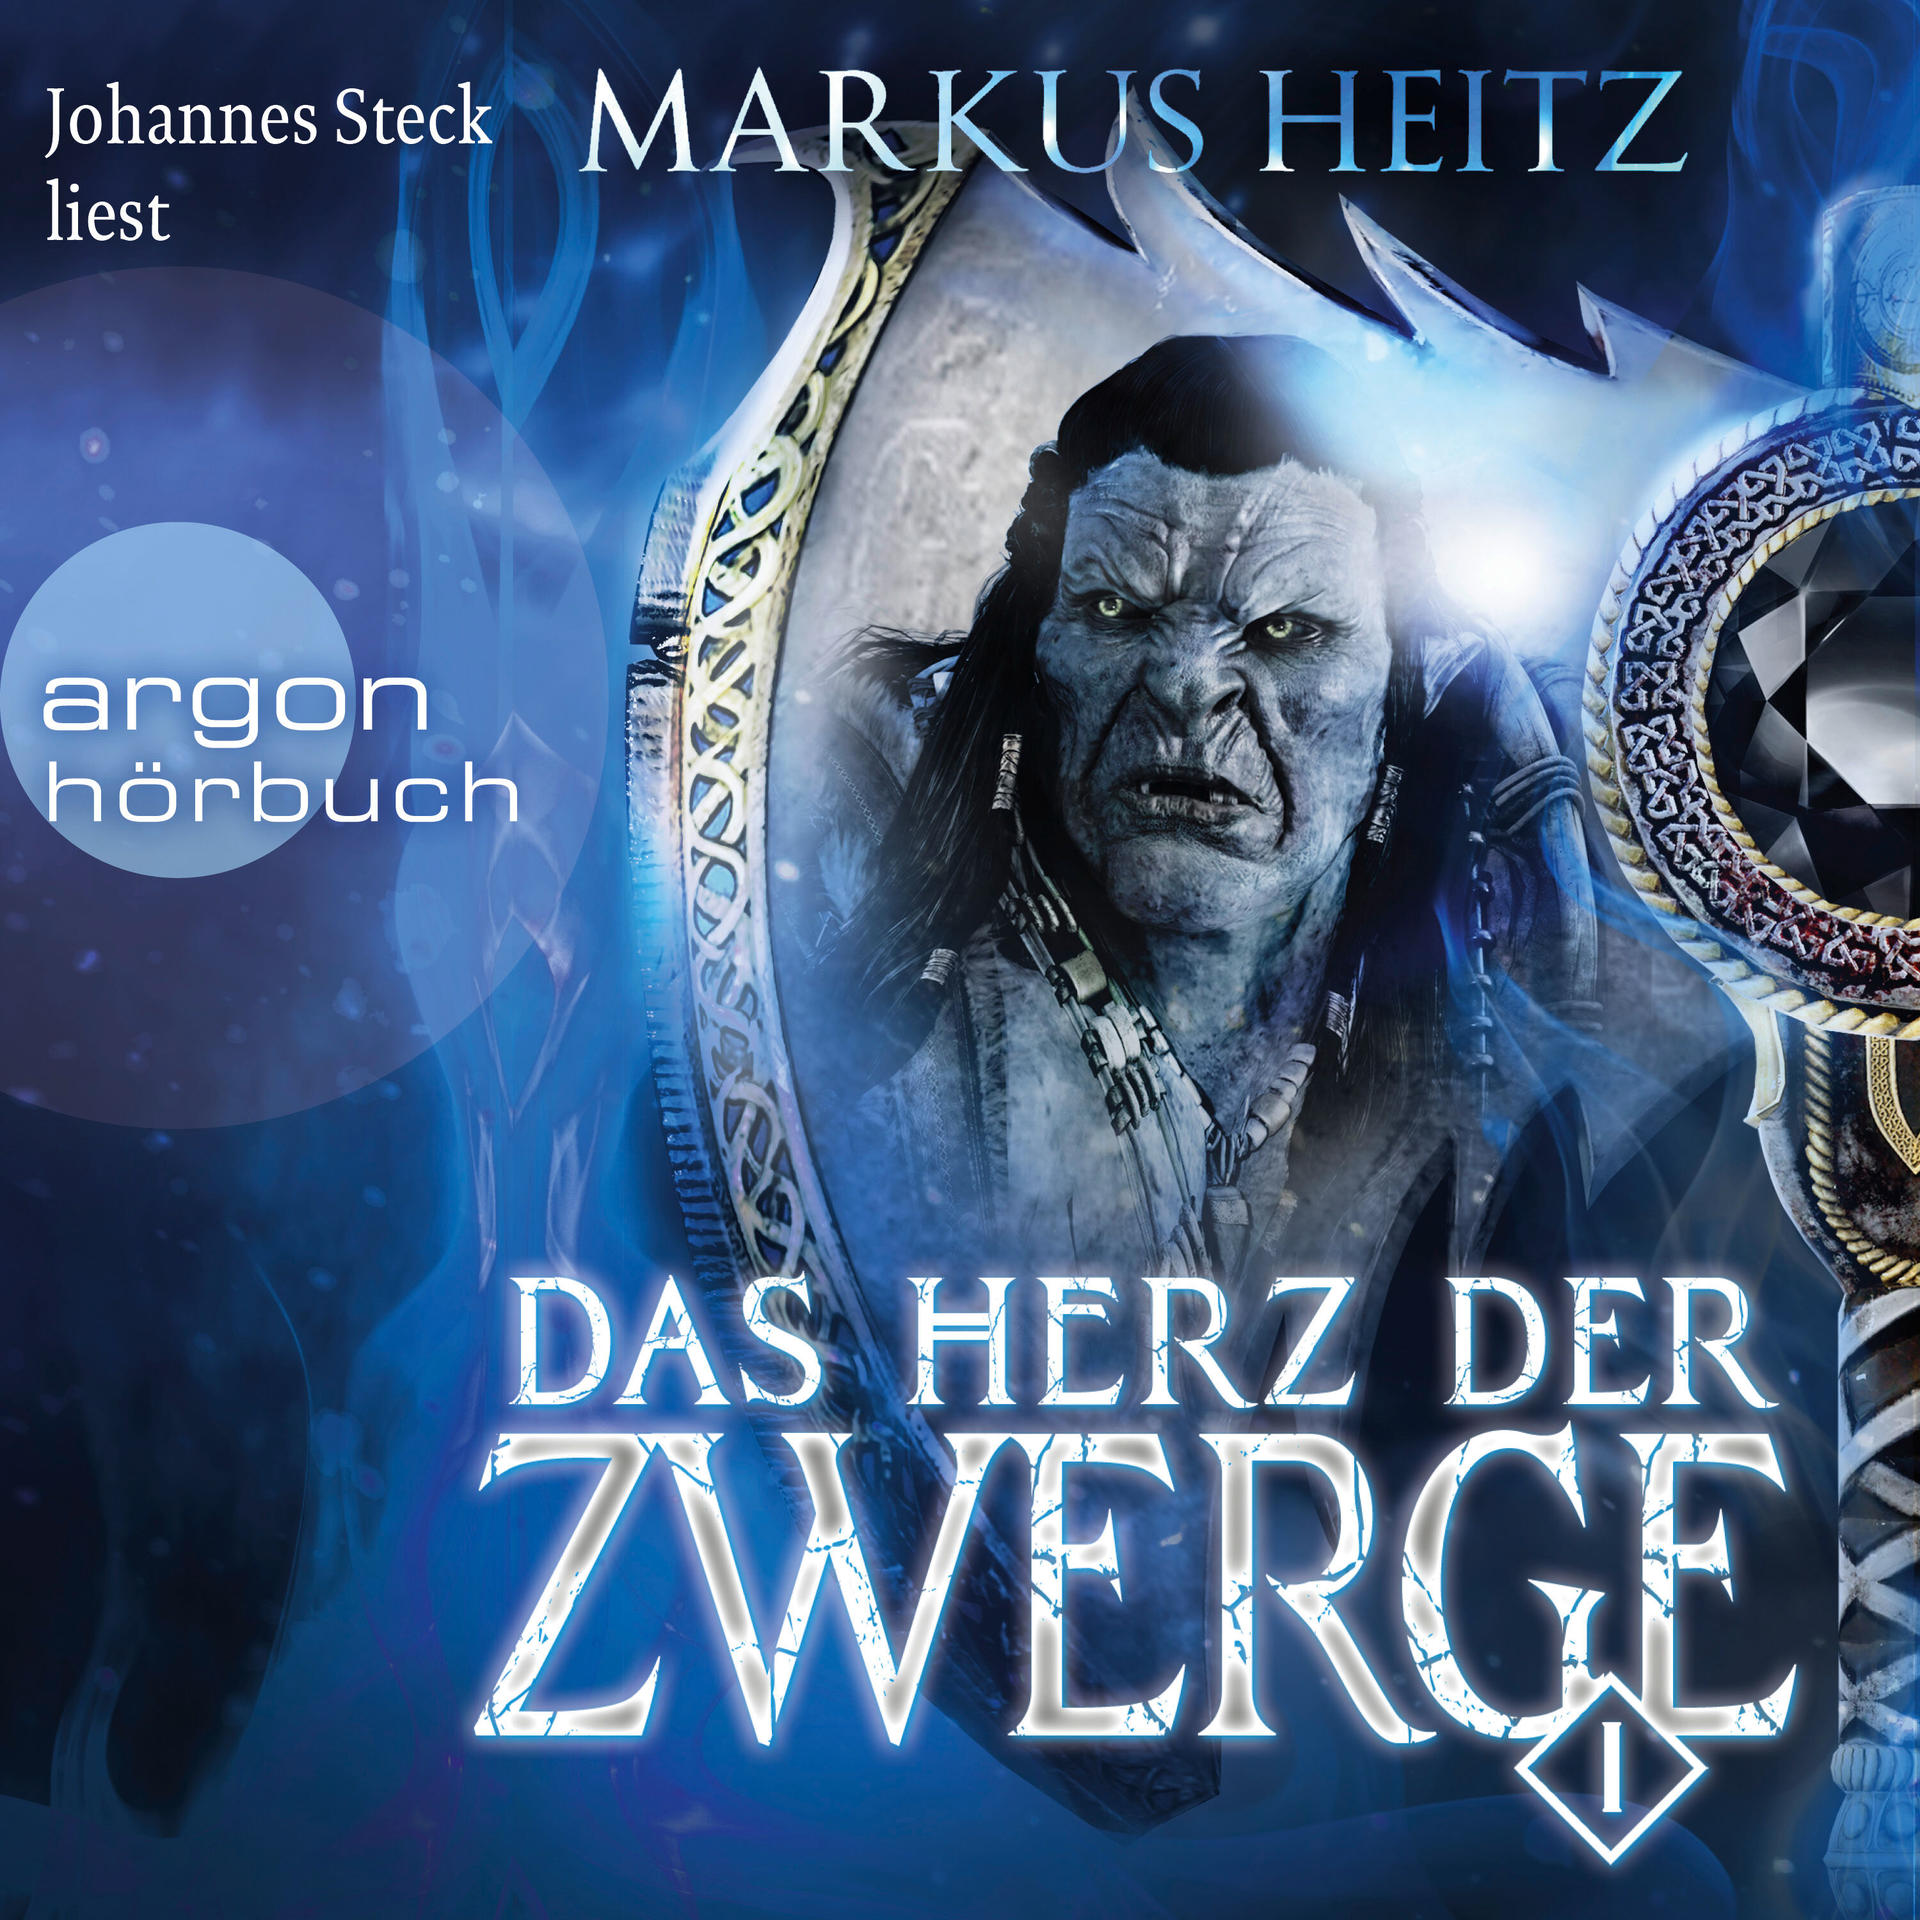 Johannes - Zwerge - (MP3-CD) 1 Herz Steck der Das